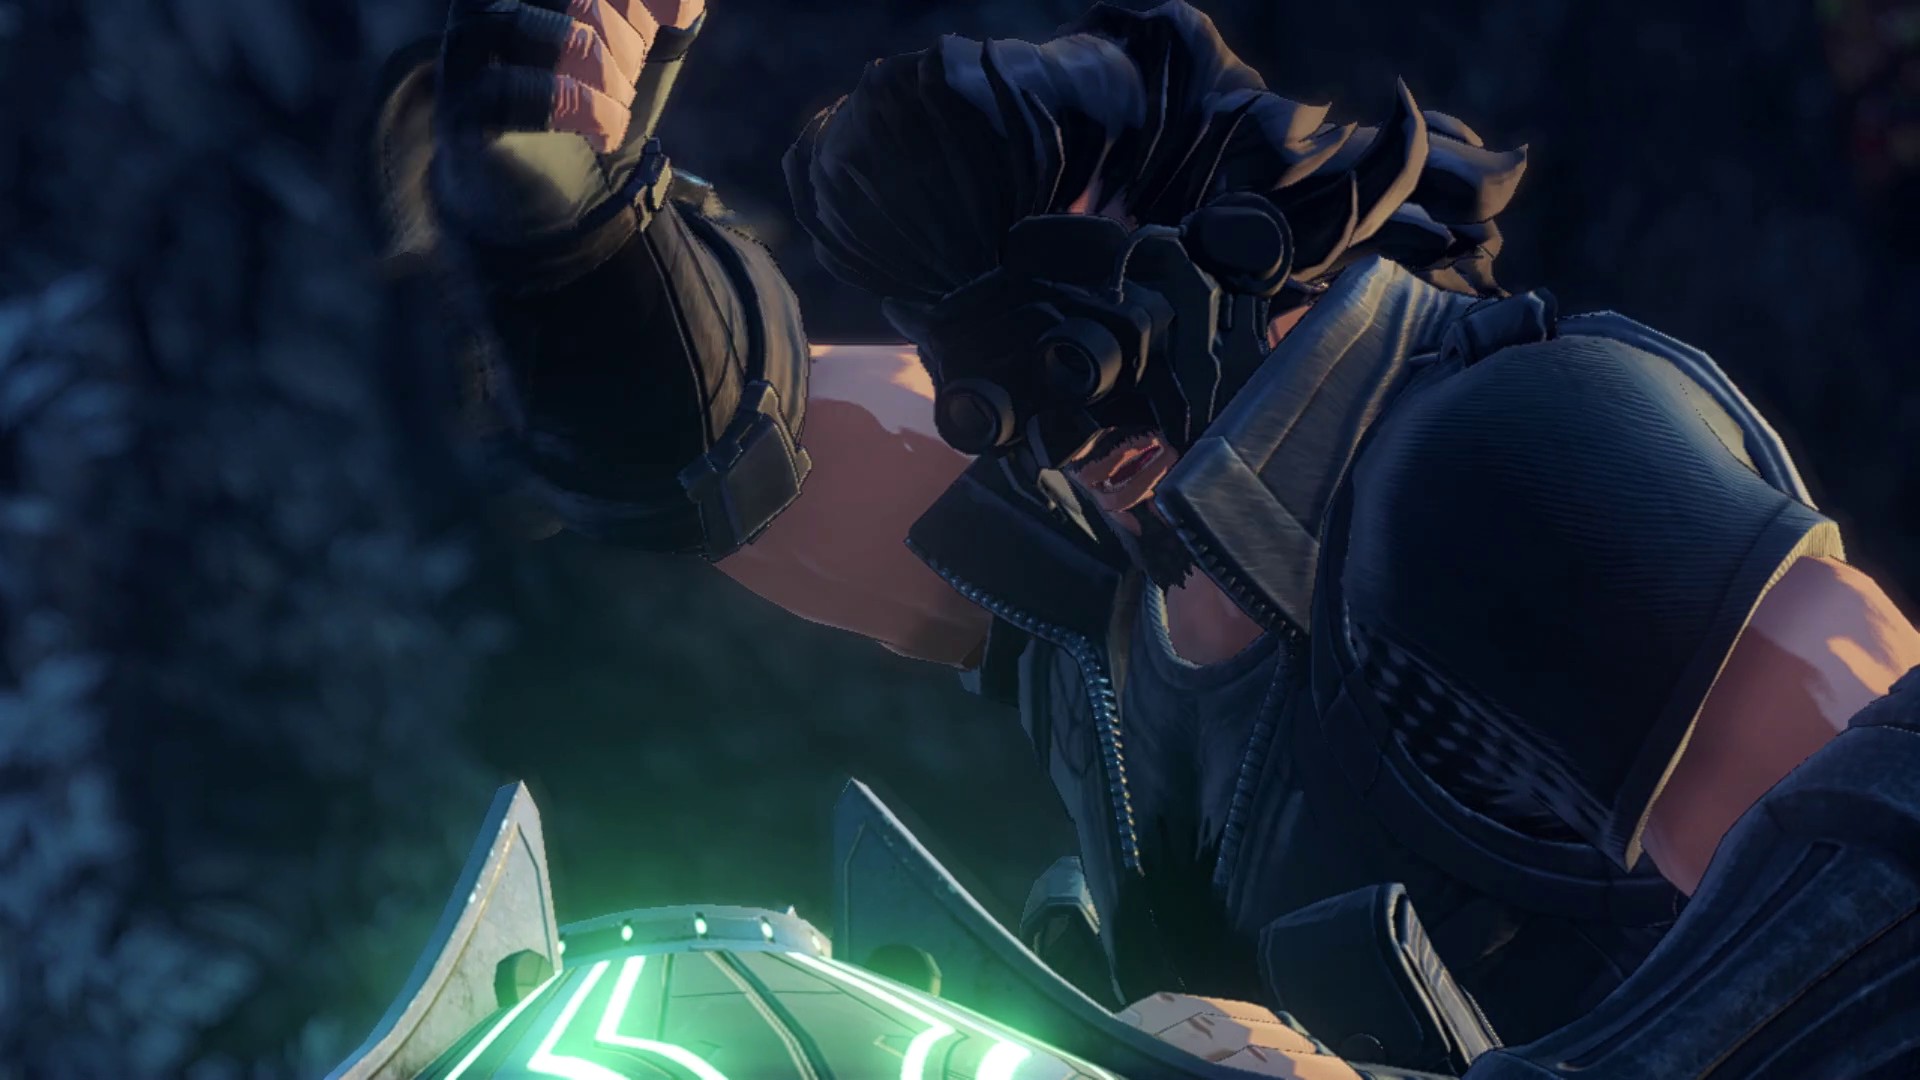 《异度神剑3》新要素介绍 主角合体机制“灵衔连结”